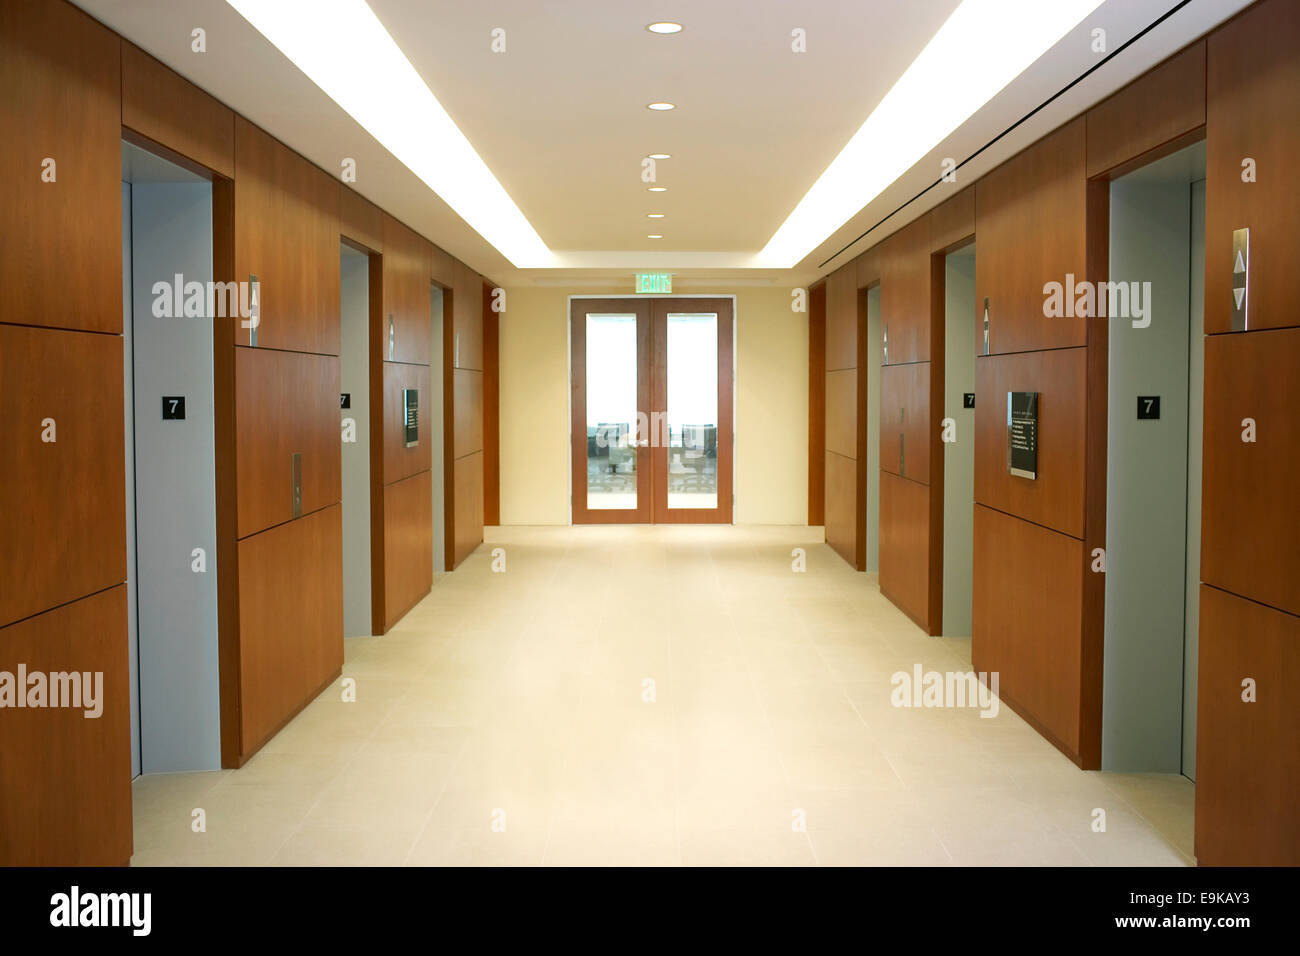 Empty hallway between elevators Stock Photo